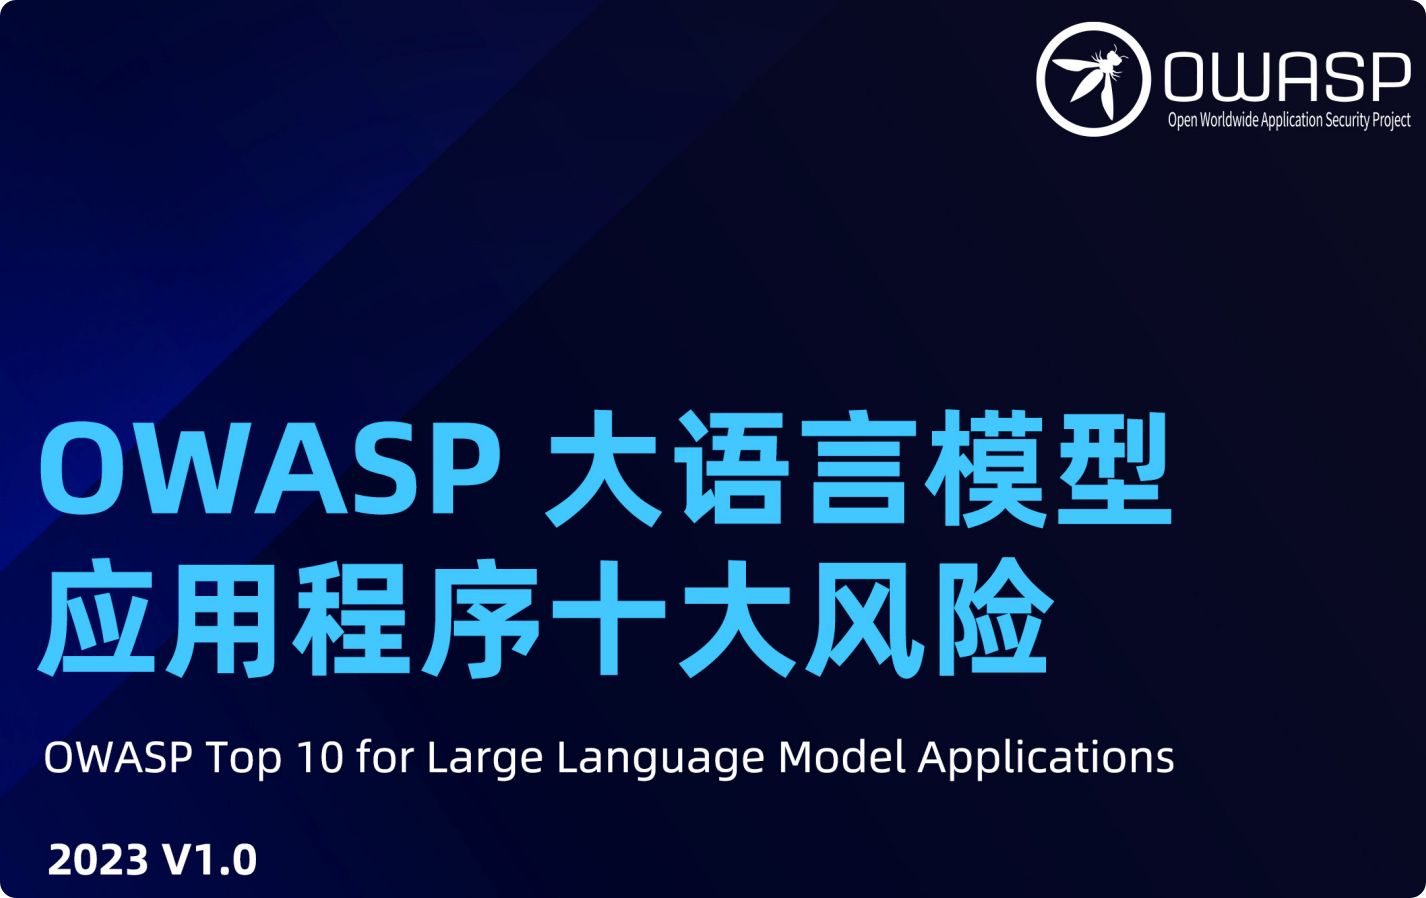 【解读】OWASP大语言模型应用程序十大风险